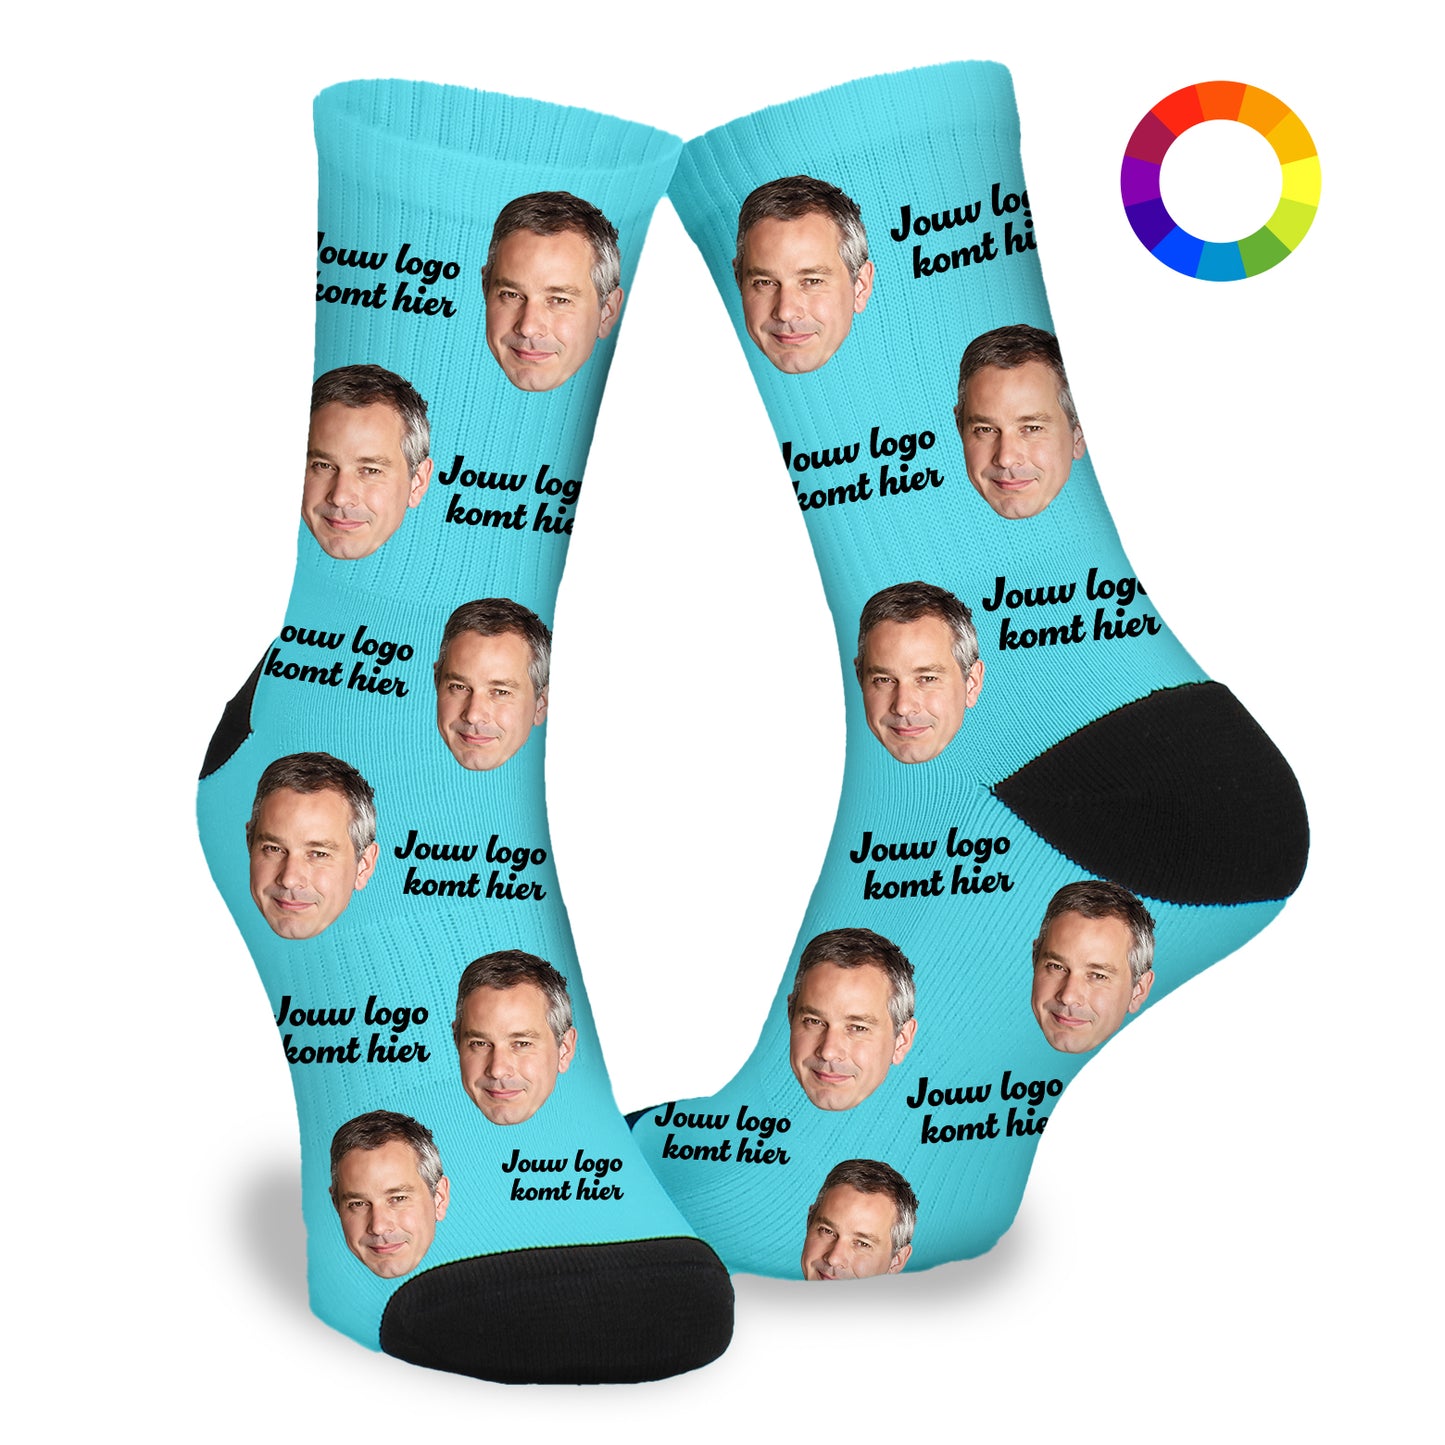 Gepersonaliseerde Sokken met eigen foto | bedrijfssokken met je eigen logo - Funnysokken.nl